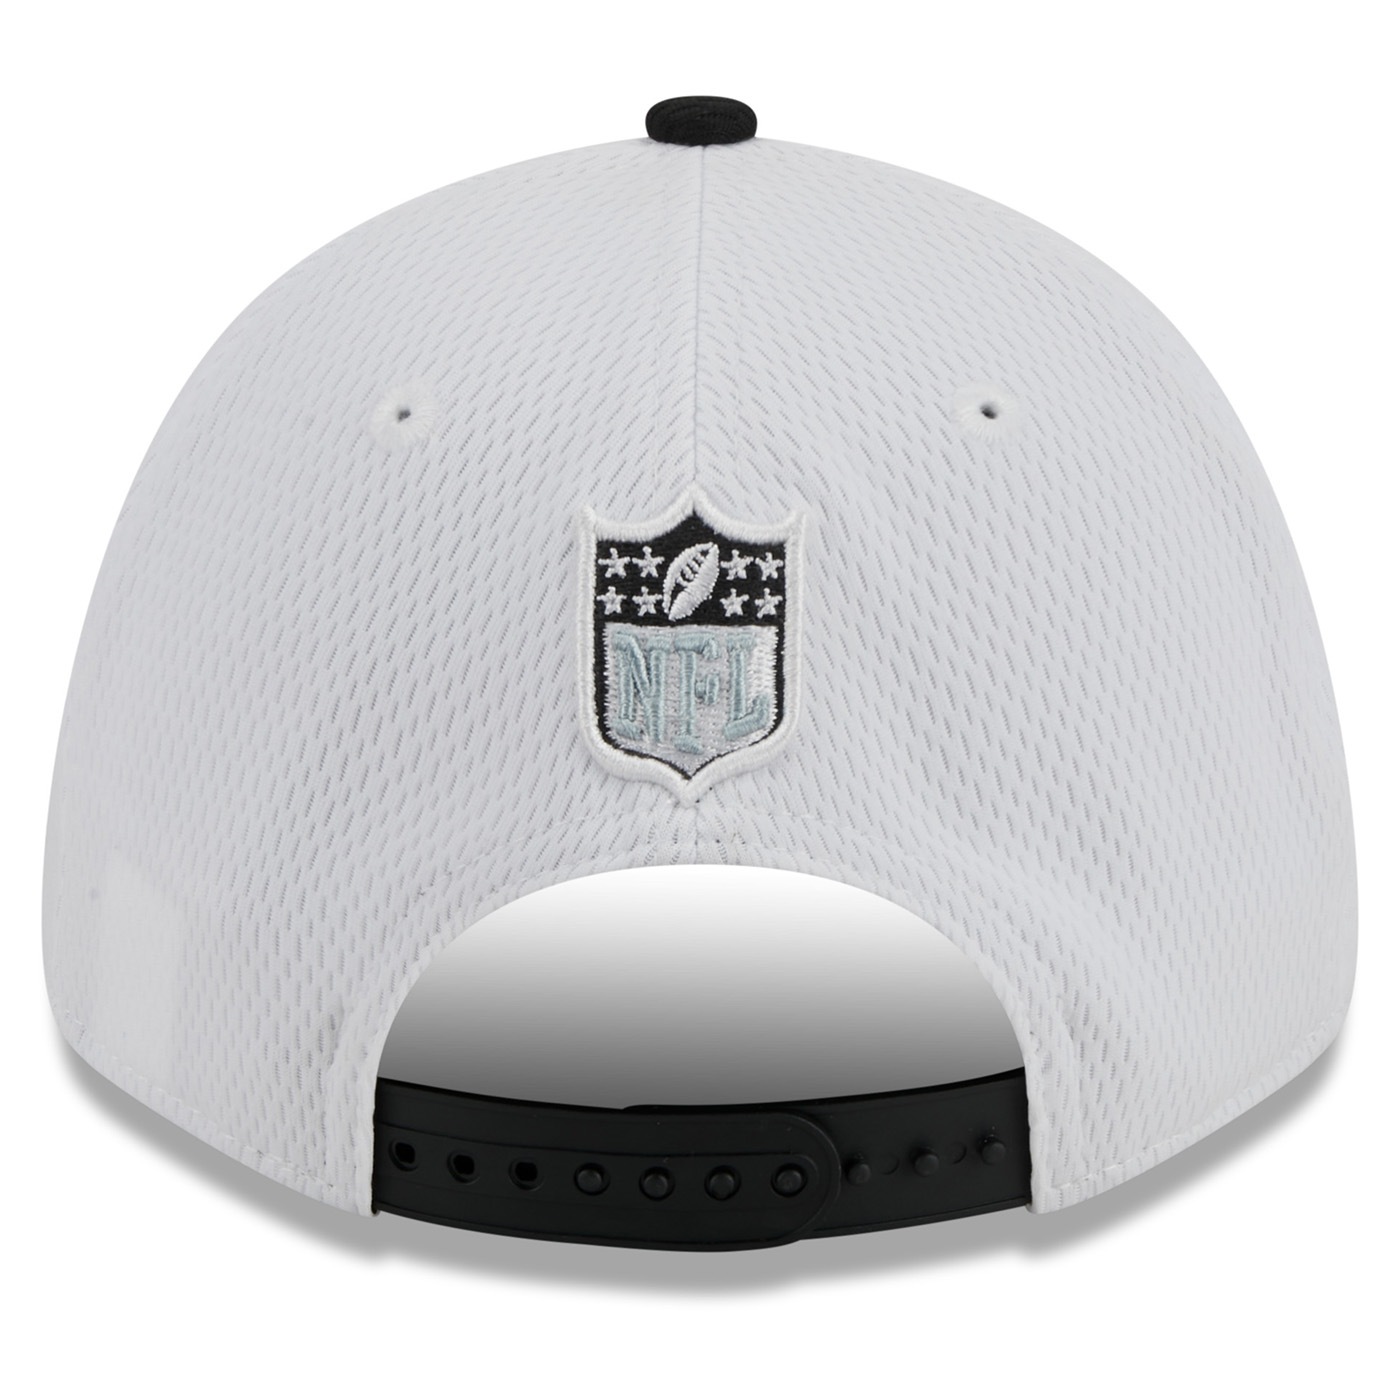 Las Vegas Raiders Hats, Raiders Snapbacks, Sideline Caps